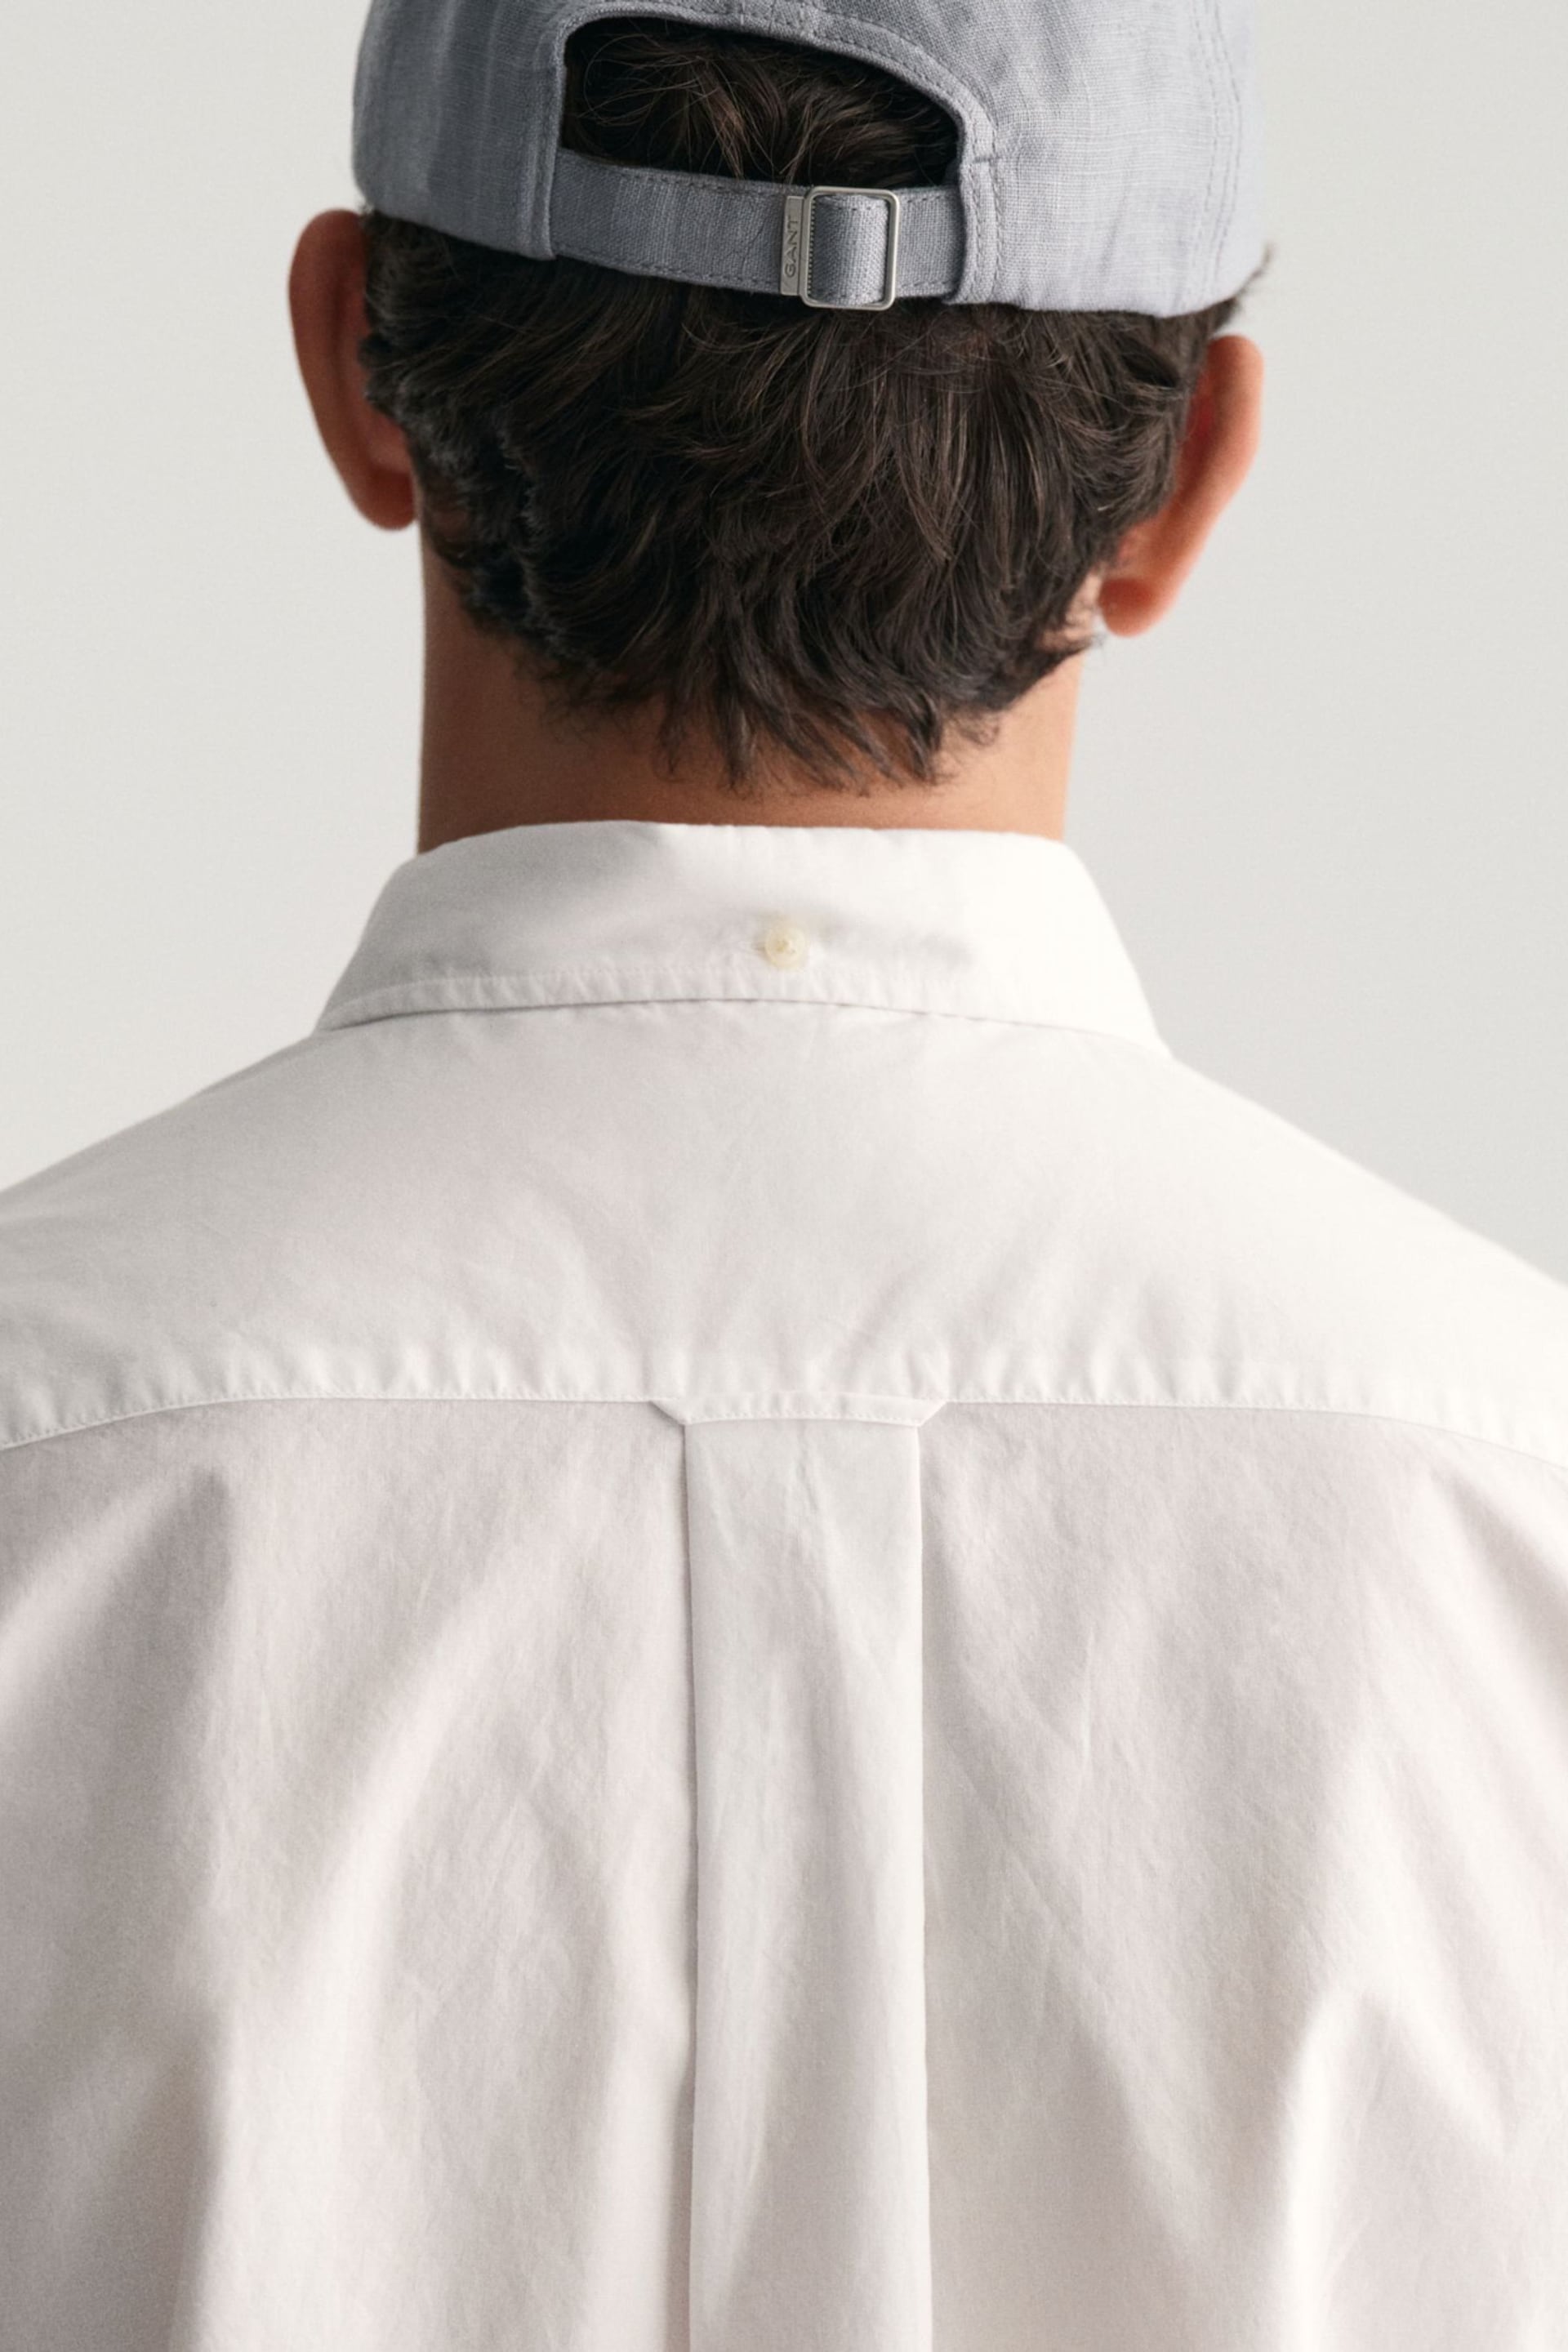 GANT White Regular Fit Poplin Short Sleeve Shirt - Image 5 of 6